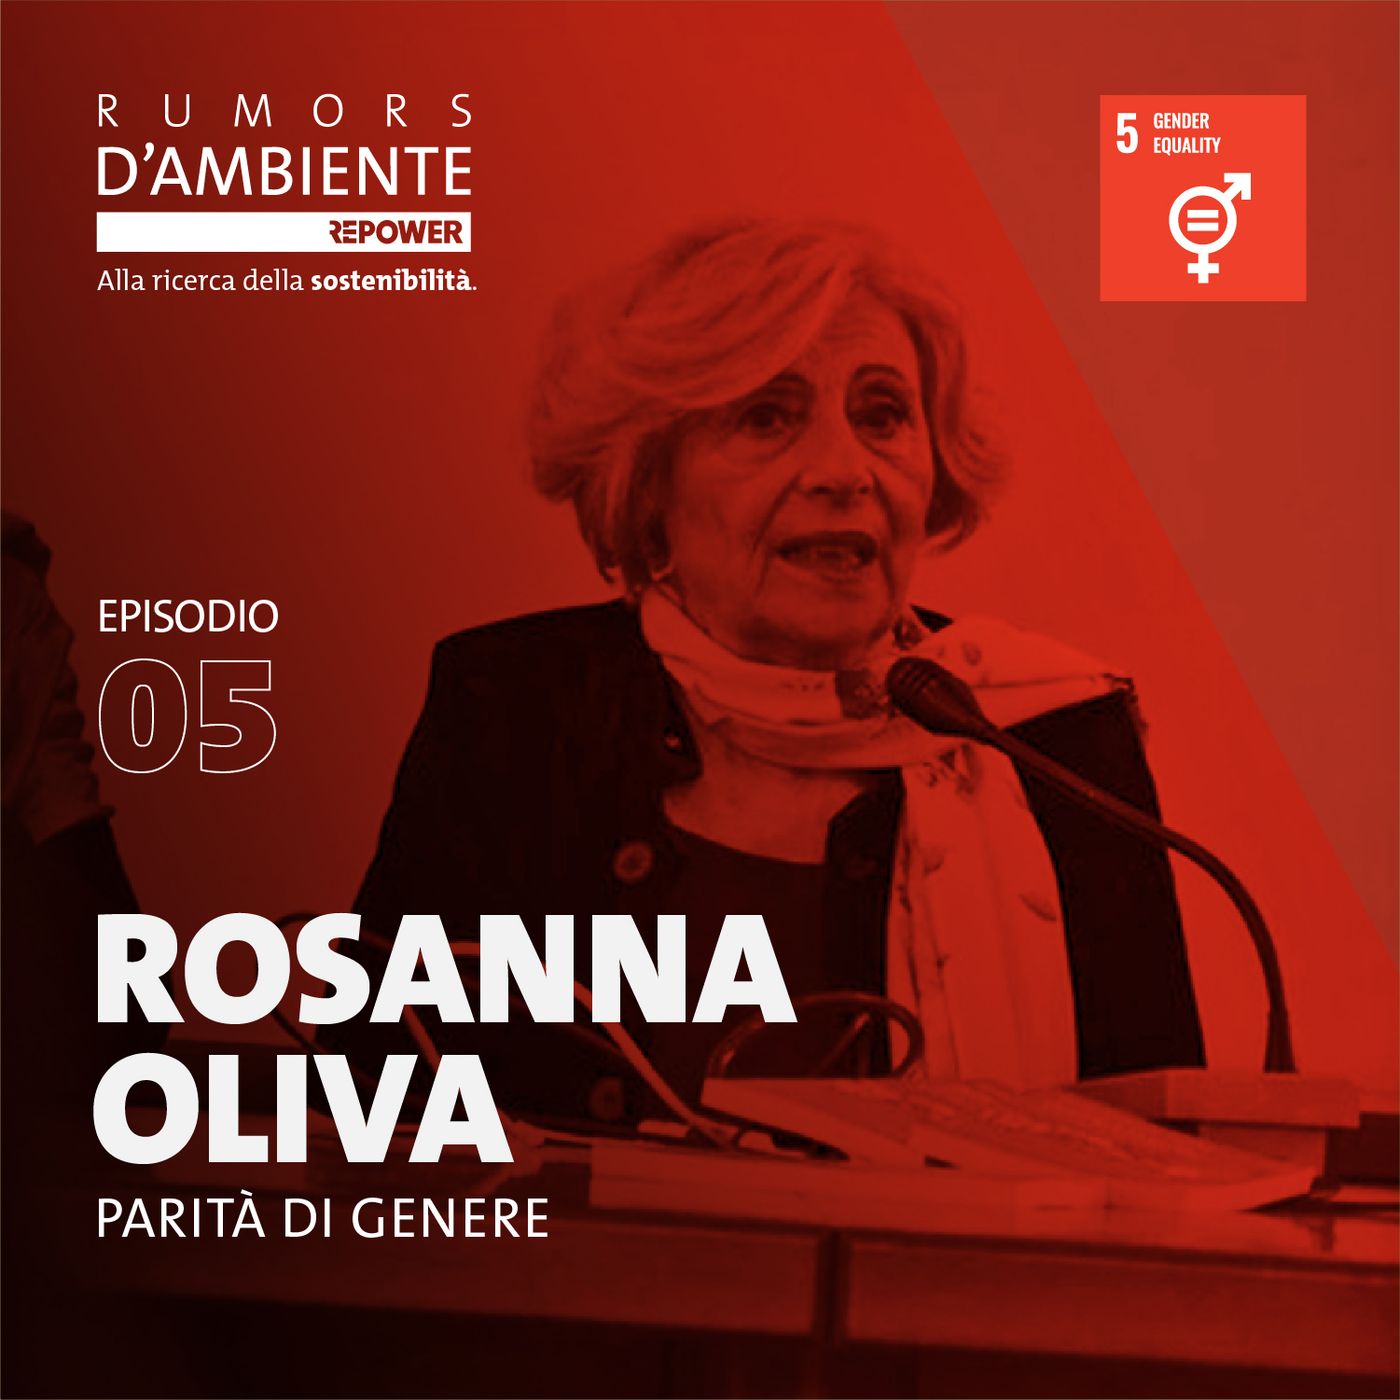 Rosanna Oliva: Parità di genere